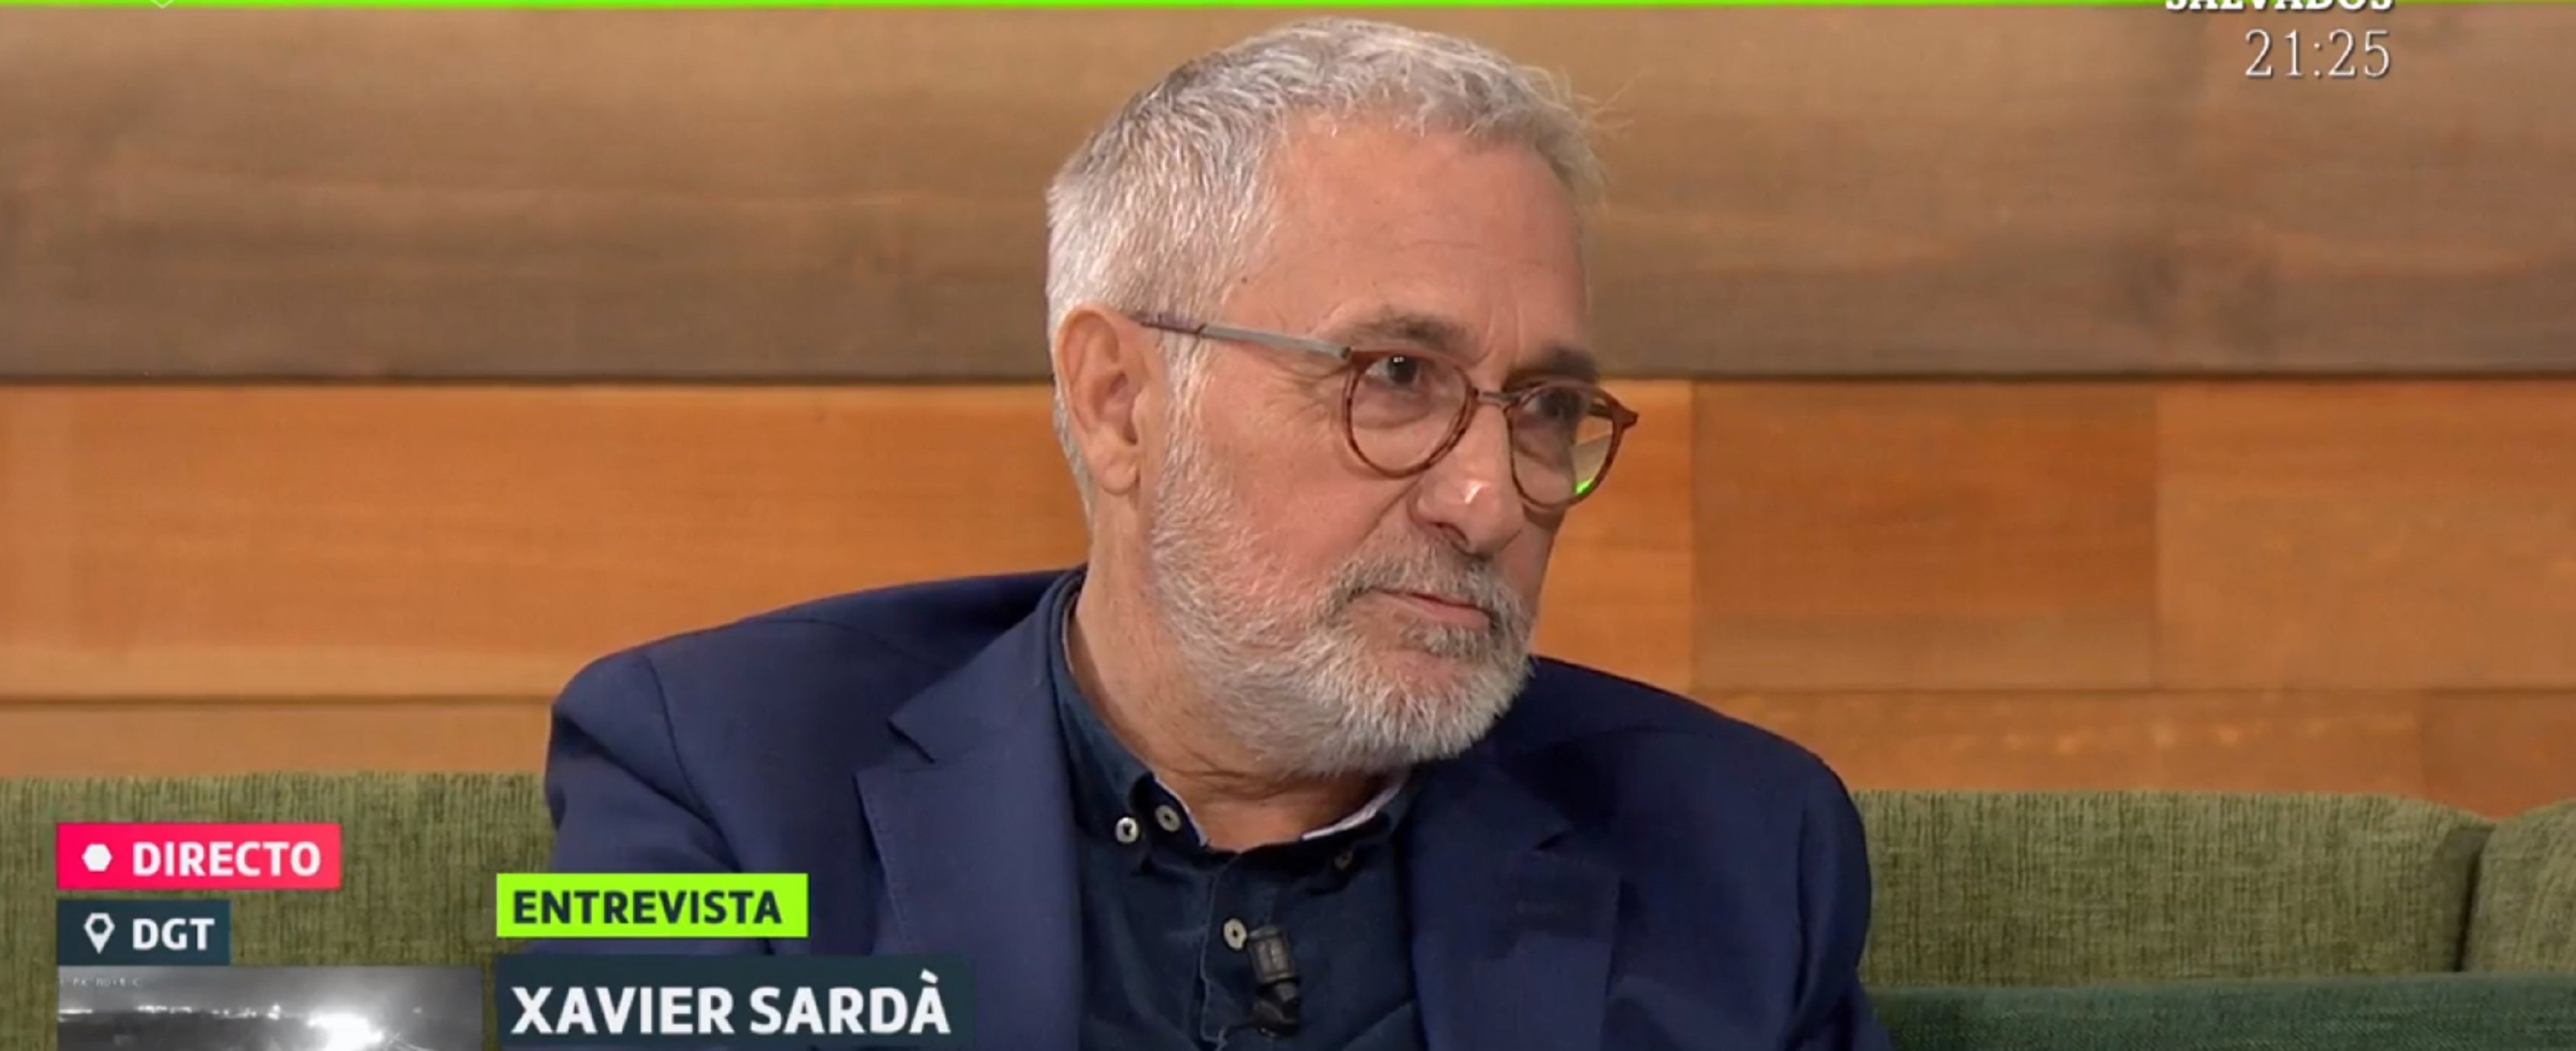 Xavier Sardà a La Sexta: "Los no indepes malvivimos al lado de los frustrados"